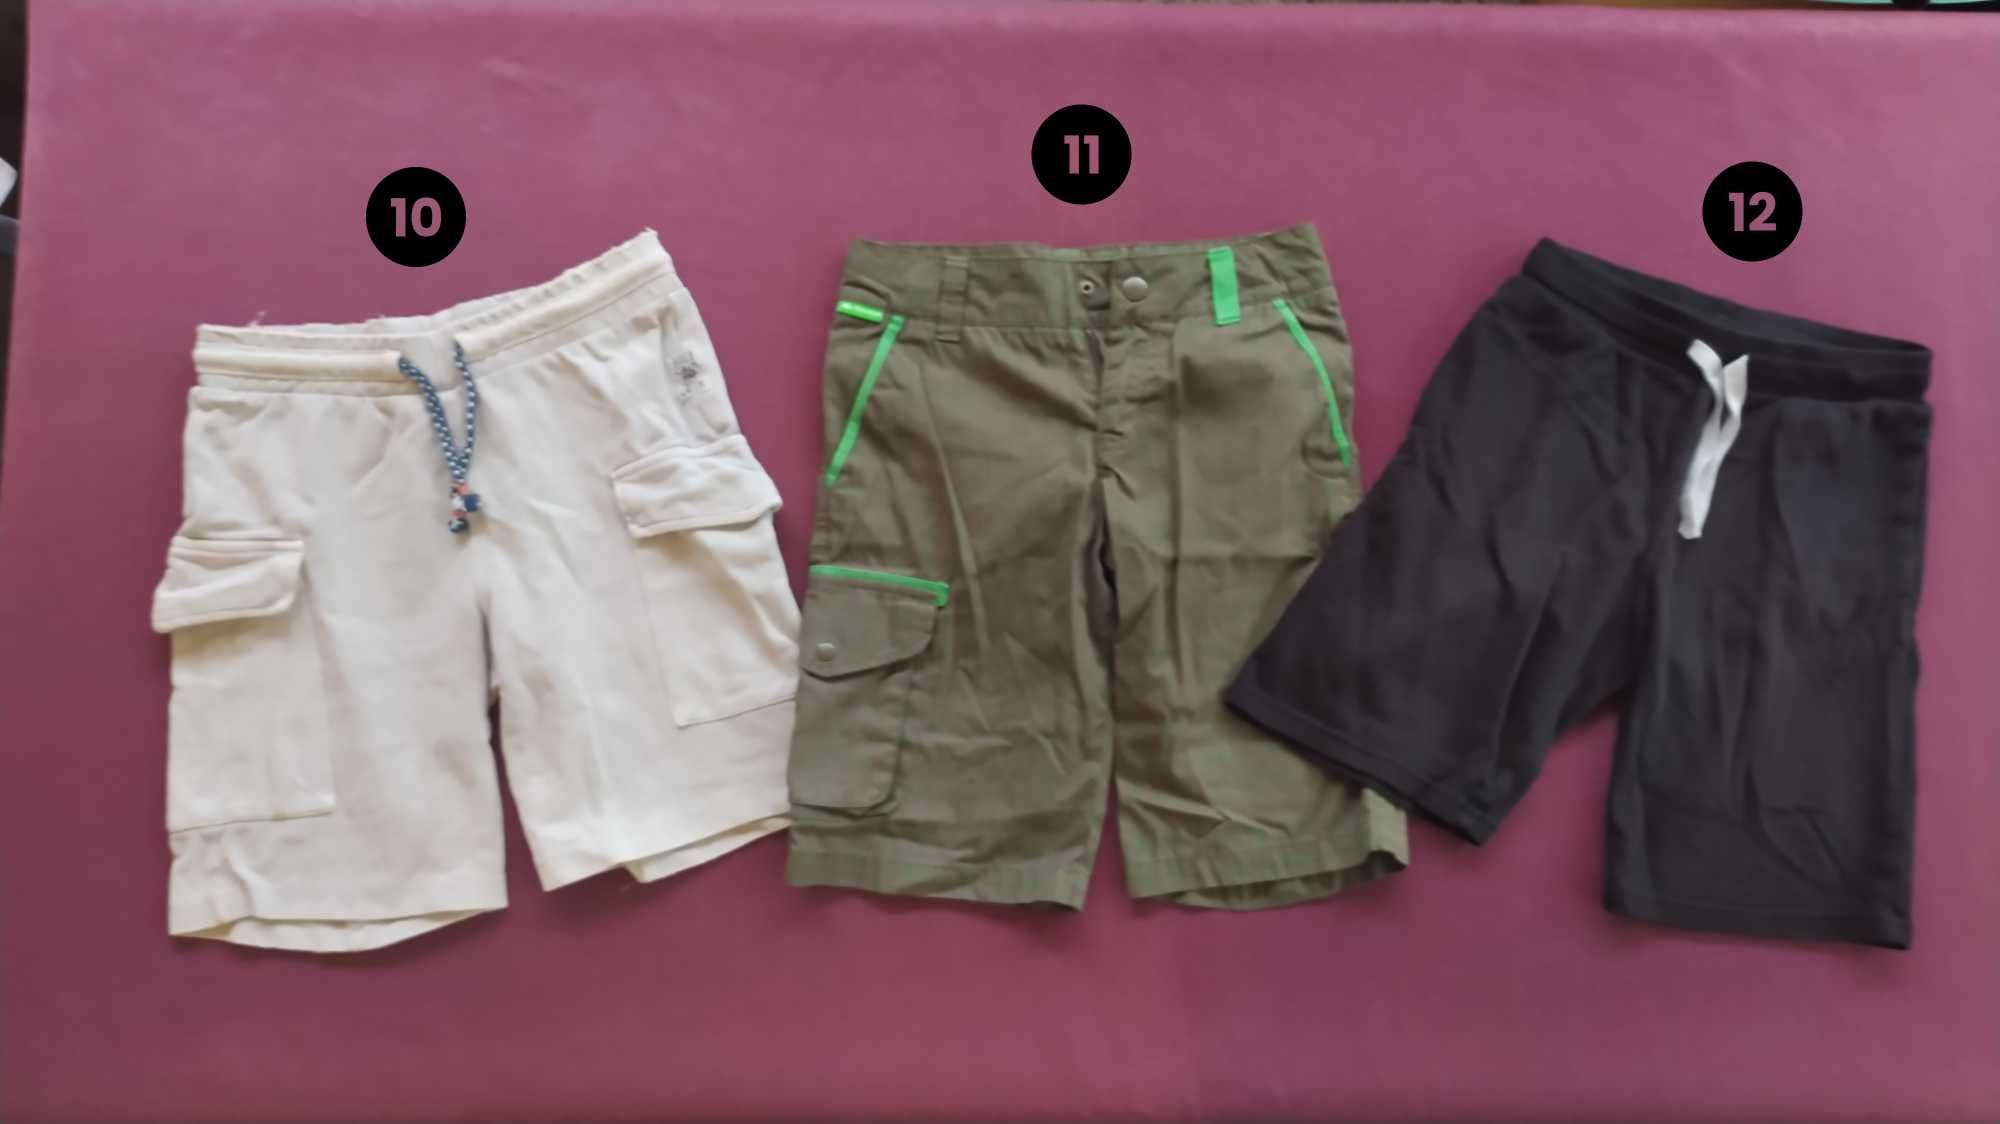 Къси панталони за момчета (4 - 15 г.) по 3 лв